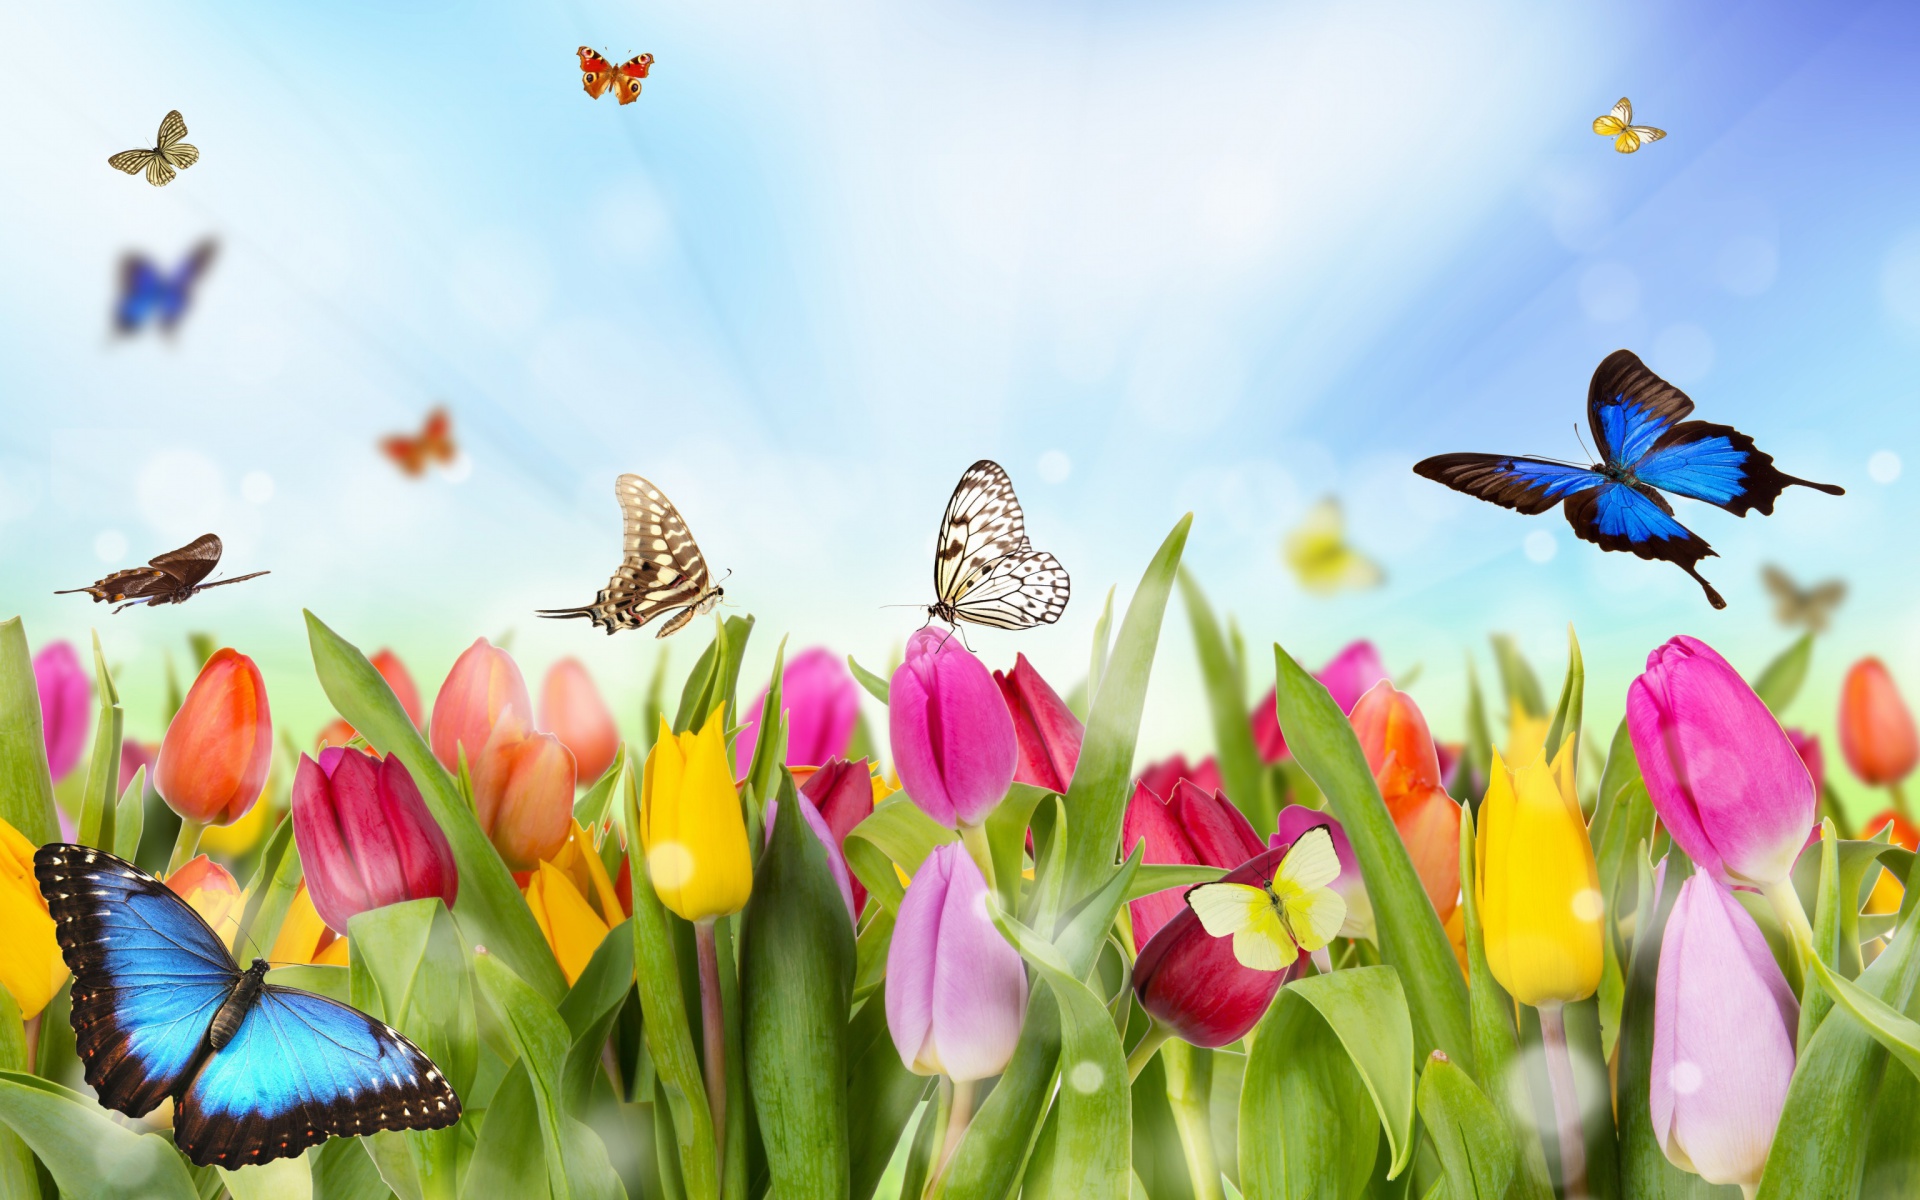 Скачать обои бесплатно Цвета, Бабочка, Красочный, Весна, Тюльпан, Художественные картинка на рабочий стол ПК